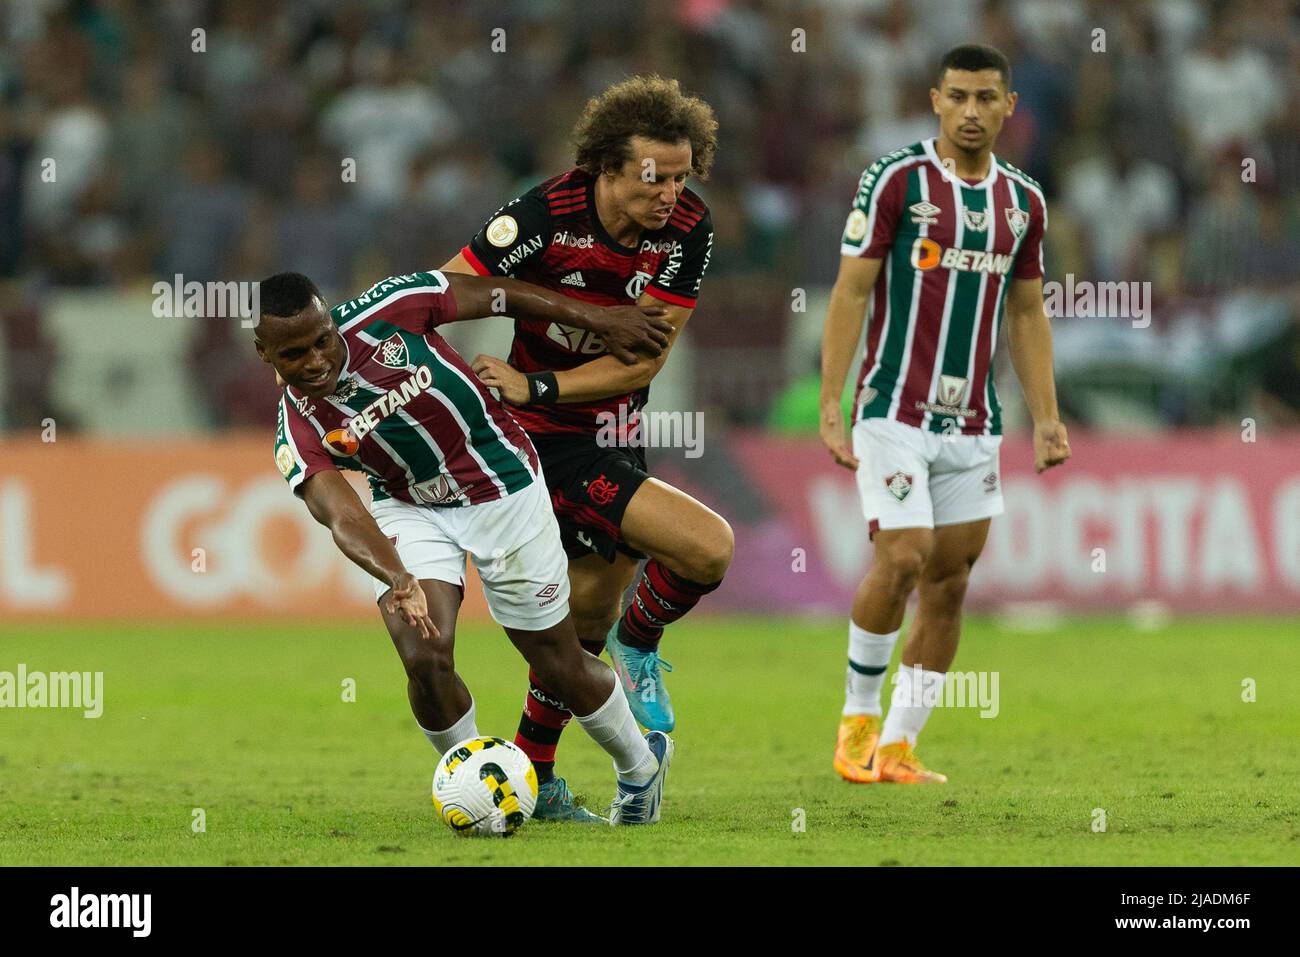 Jhon Arias retorna e Fluminense terá time completo contra o Flamengo -  Esportes - R7 Futebol